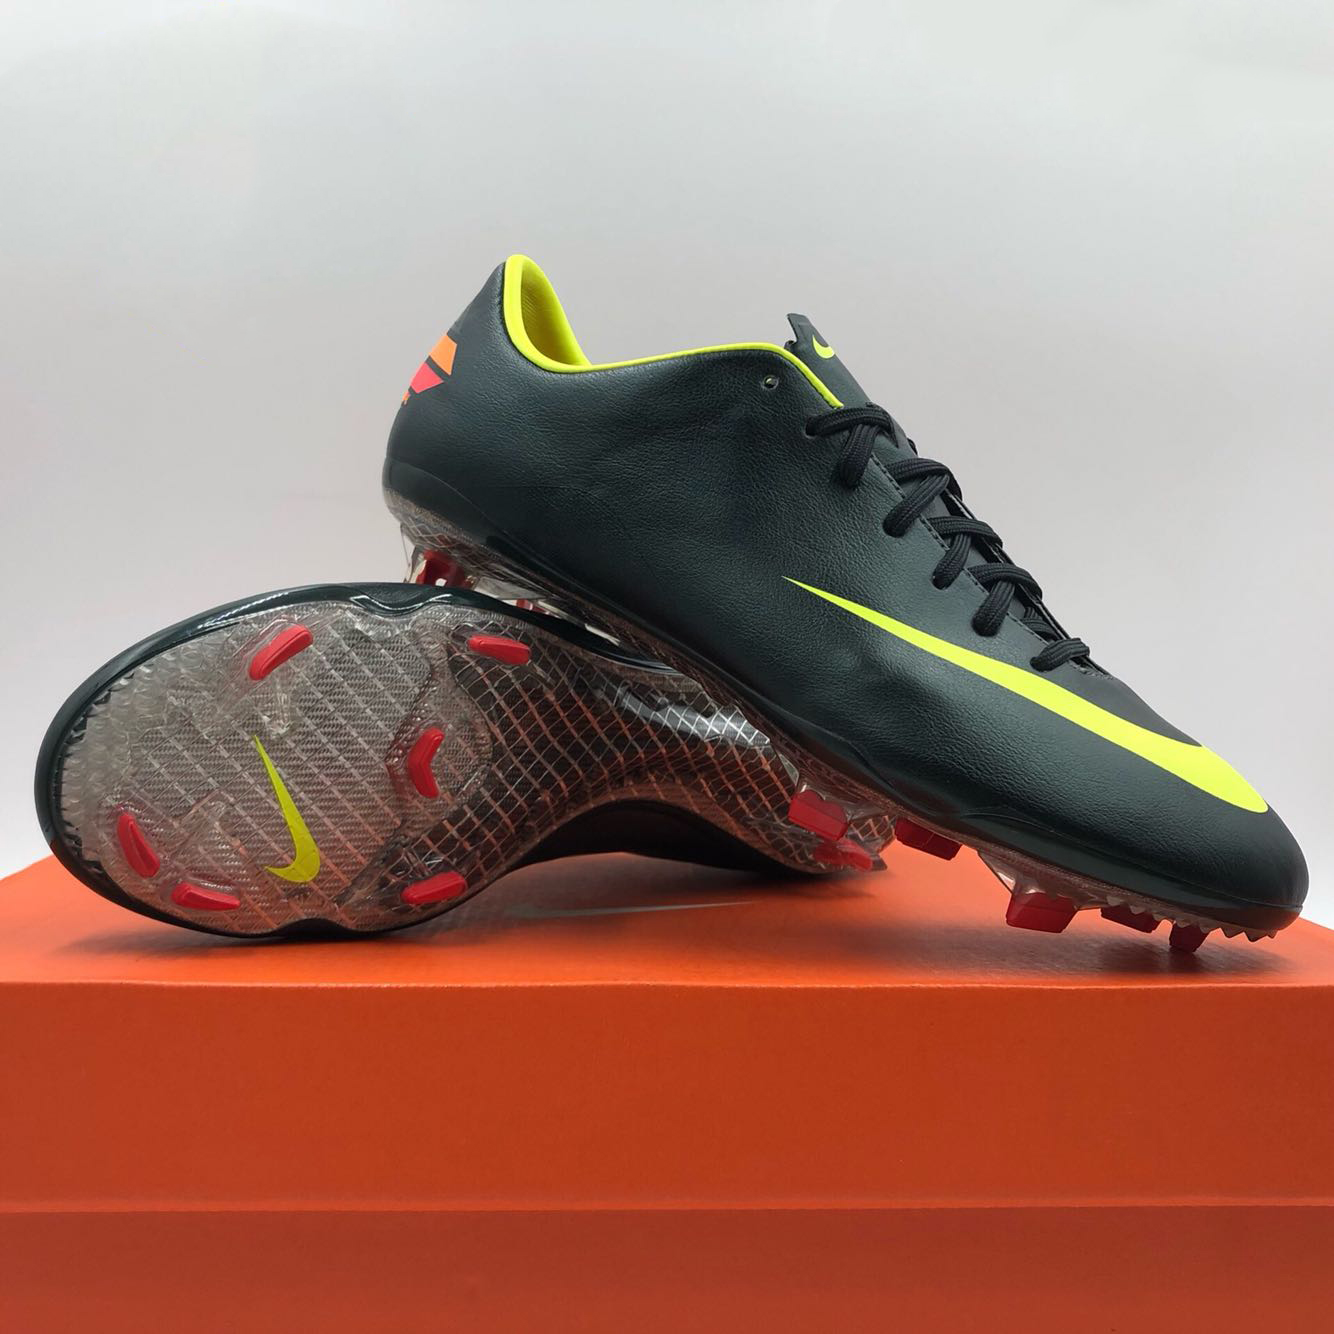 Nike “FORCE 新力场” 球鞋定制活动登陆上海 – NOWRE现客